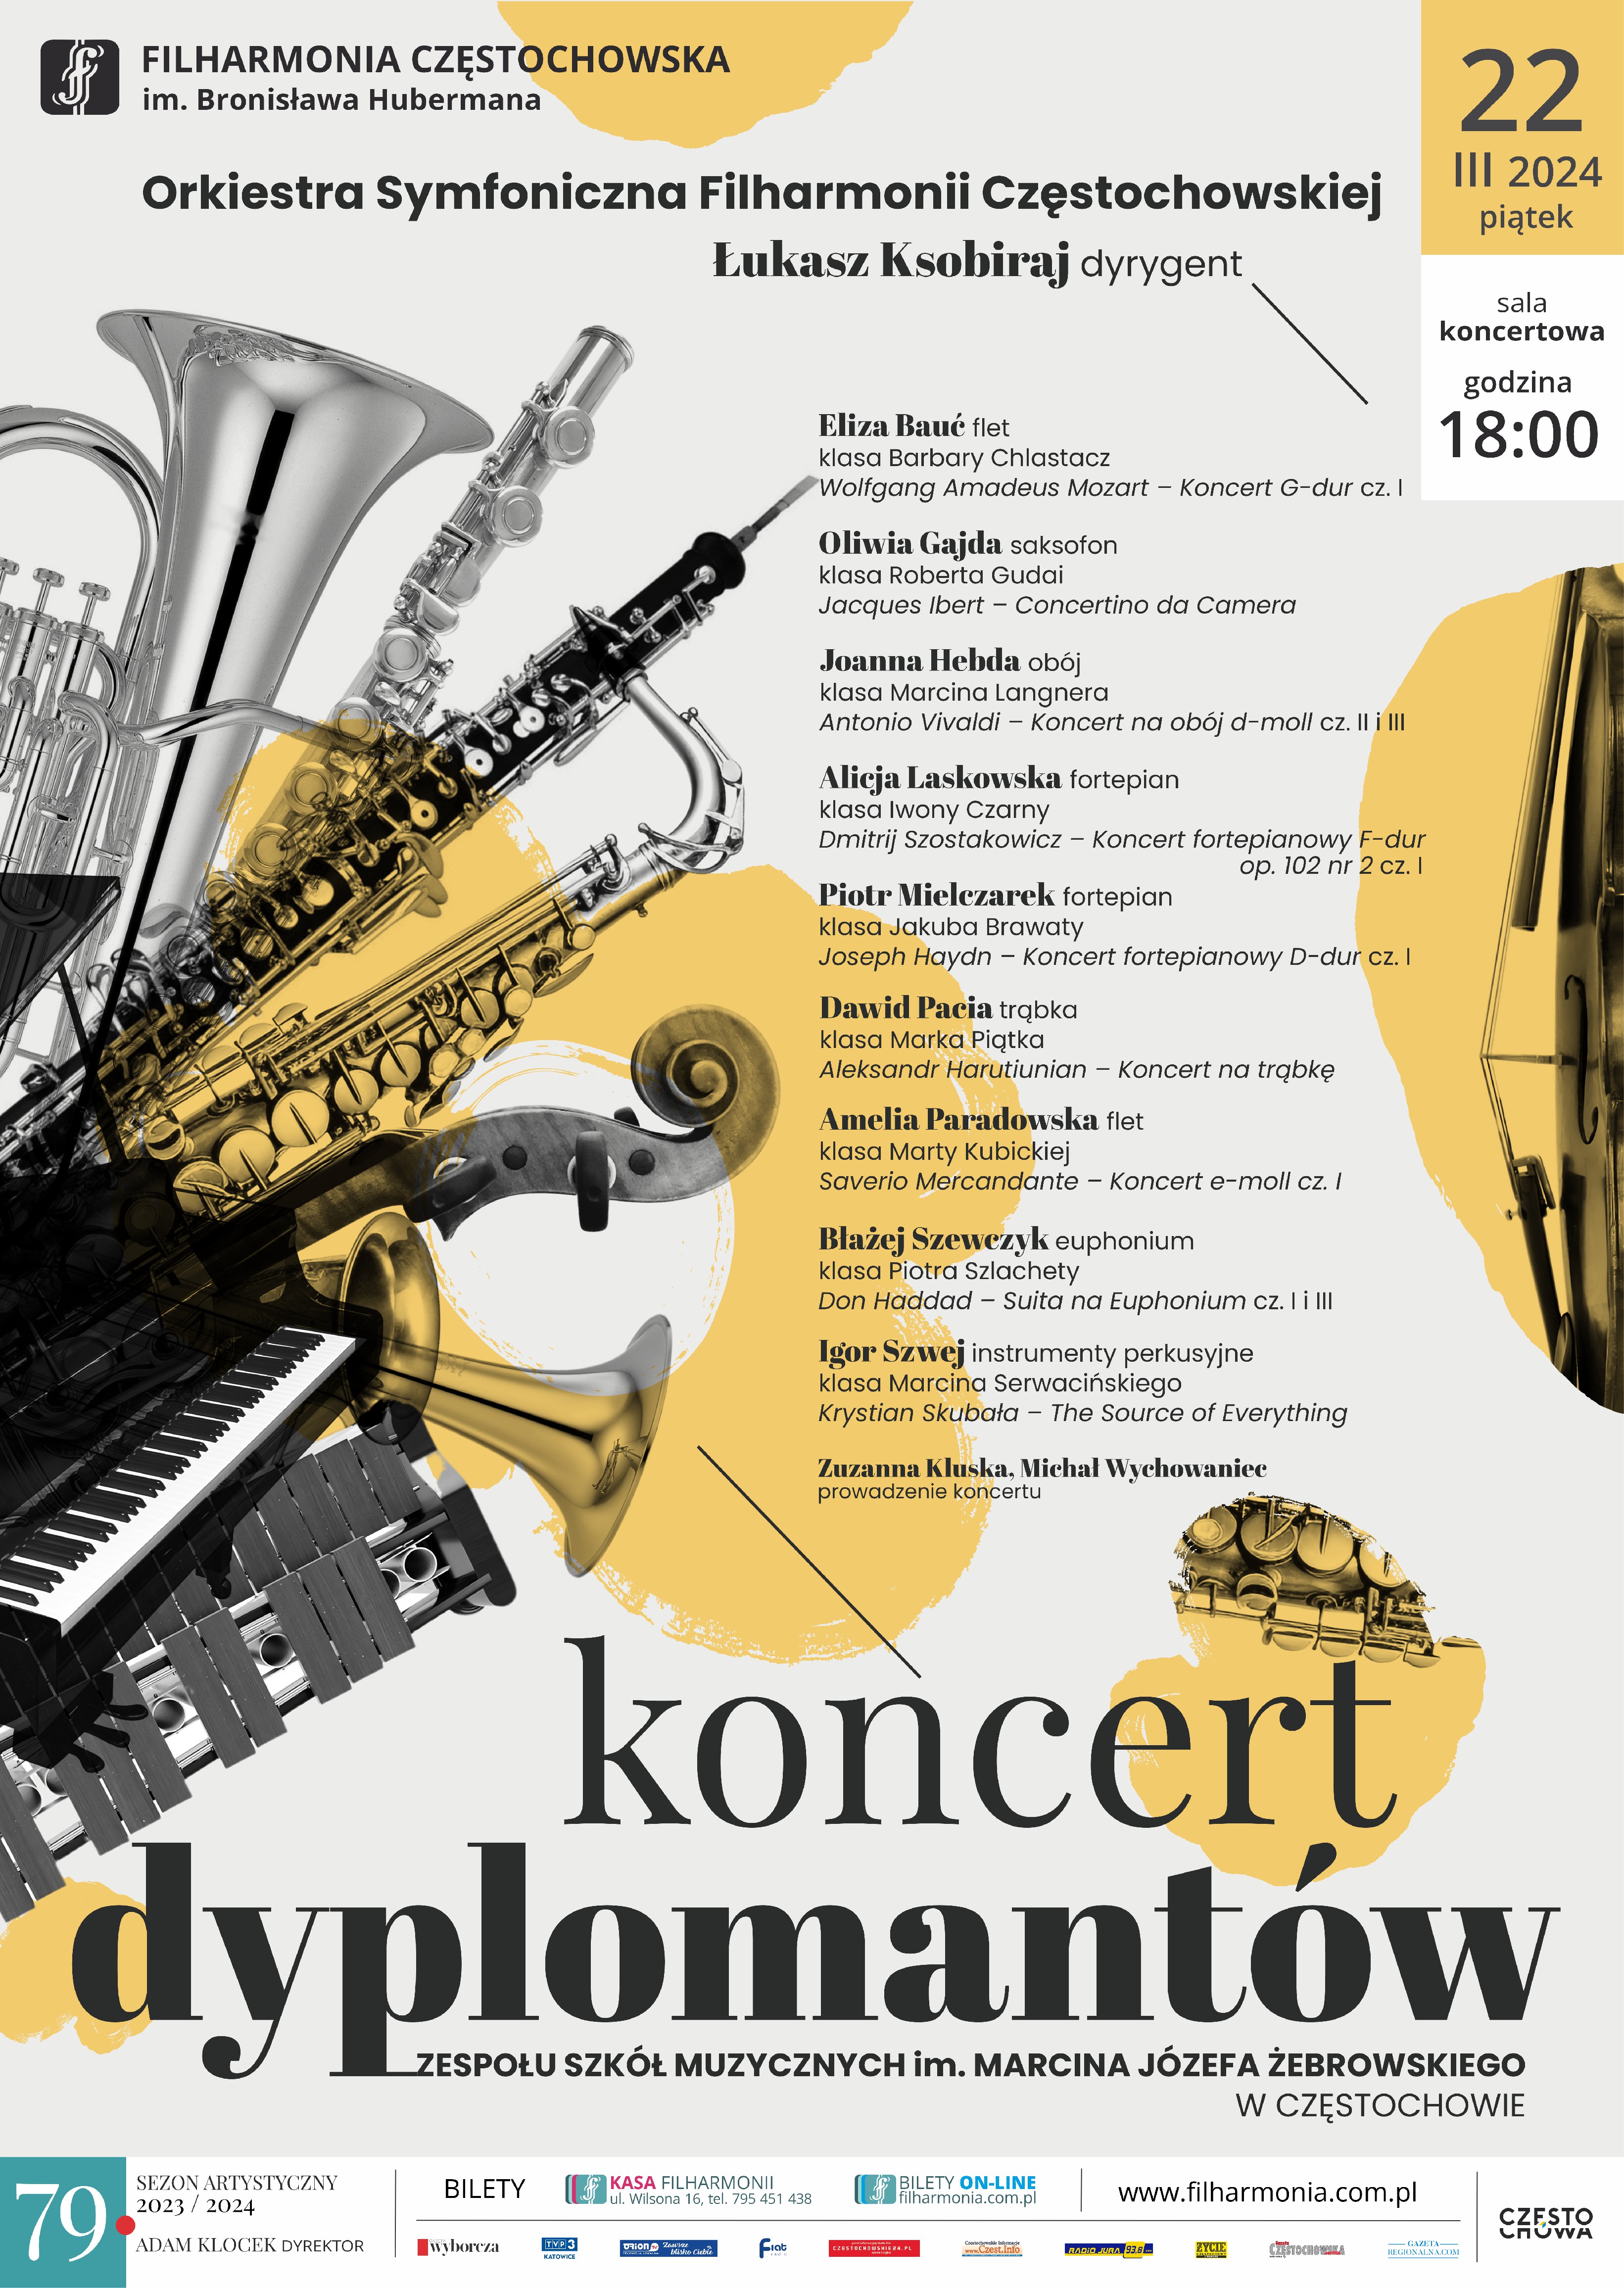 Kremowe tło, po lewej zdjęcia instrumentów, informacje dotyczące koncertu dyplomantów w filharmonii częstochowskiej